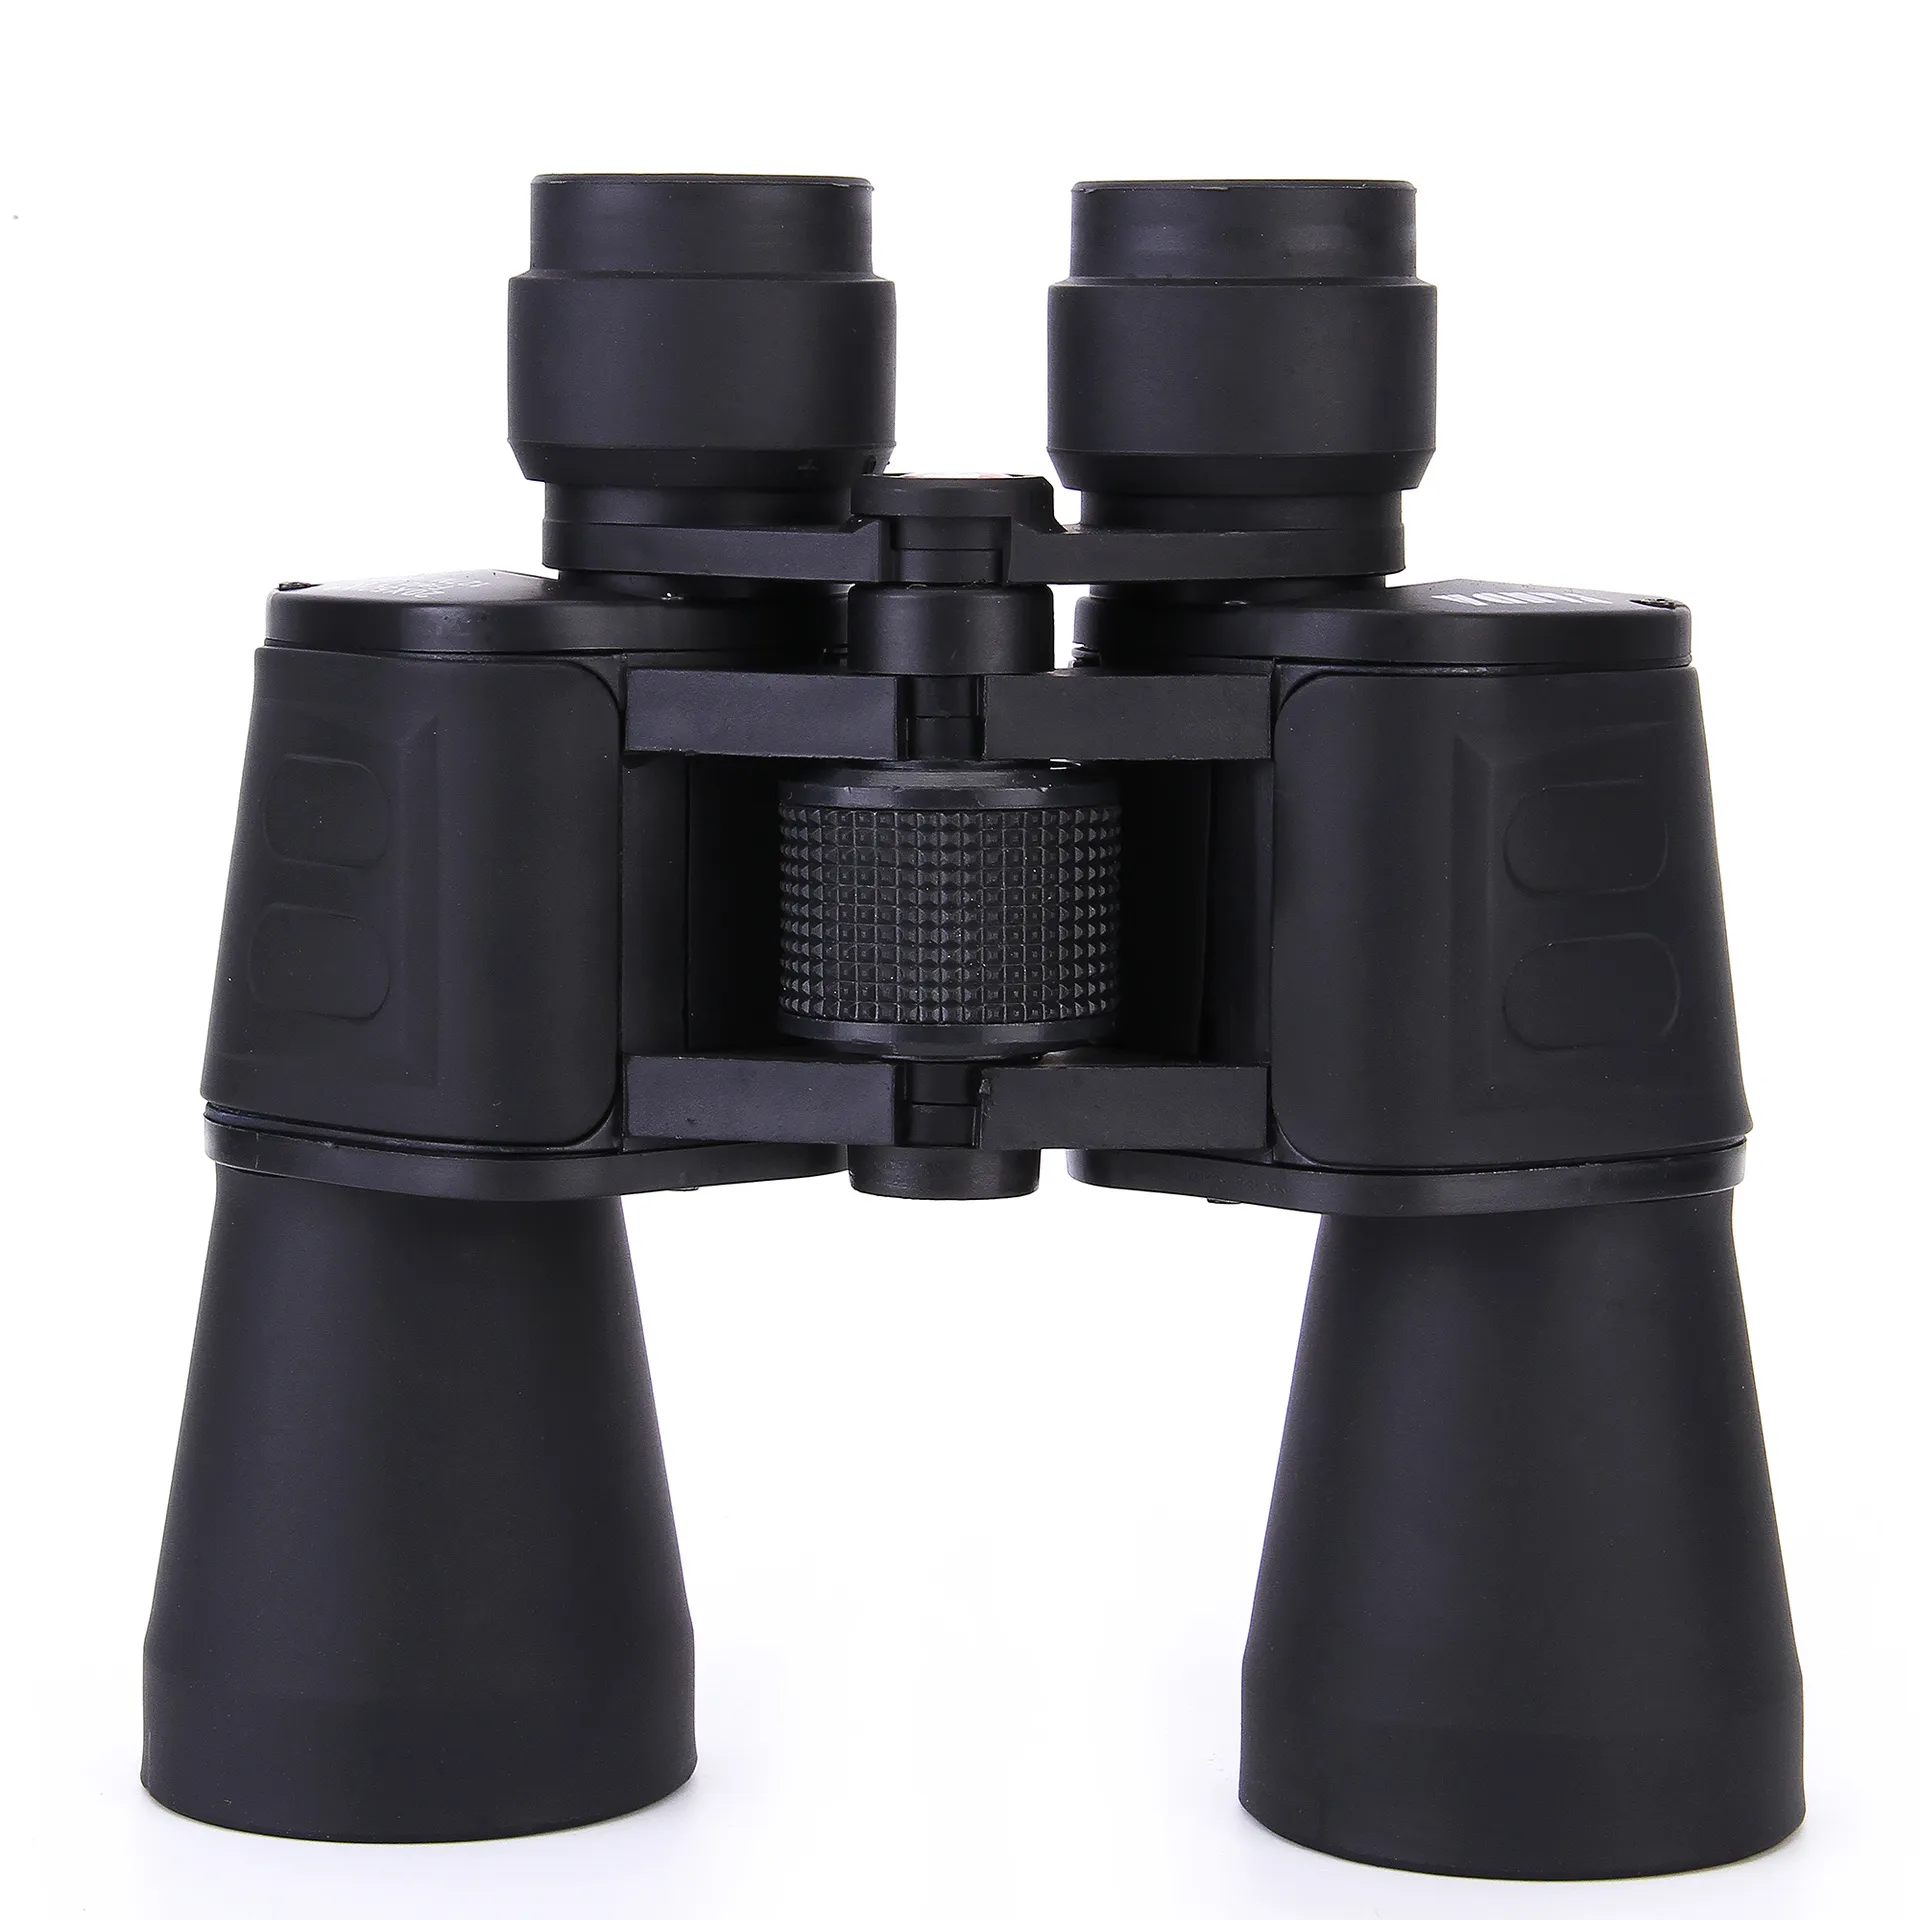 العلامة التجارية 20X50 مناظير عالية الجودة عالية الدقة زاوية واسعة تكبير مركزي للرؤية النهارية والليلية وليس تلسكوب الأشعة تحت الحمراء